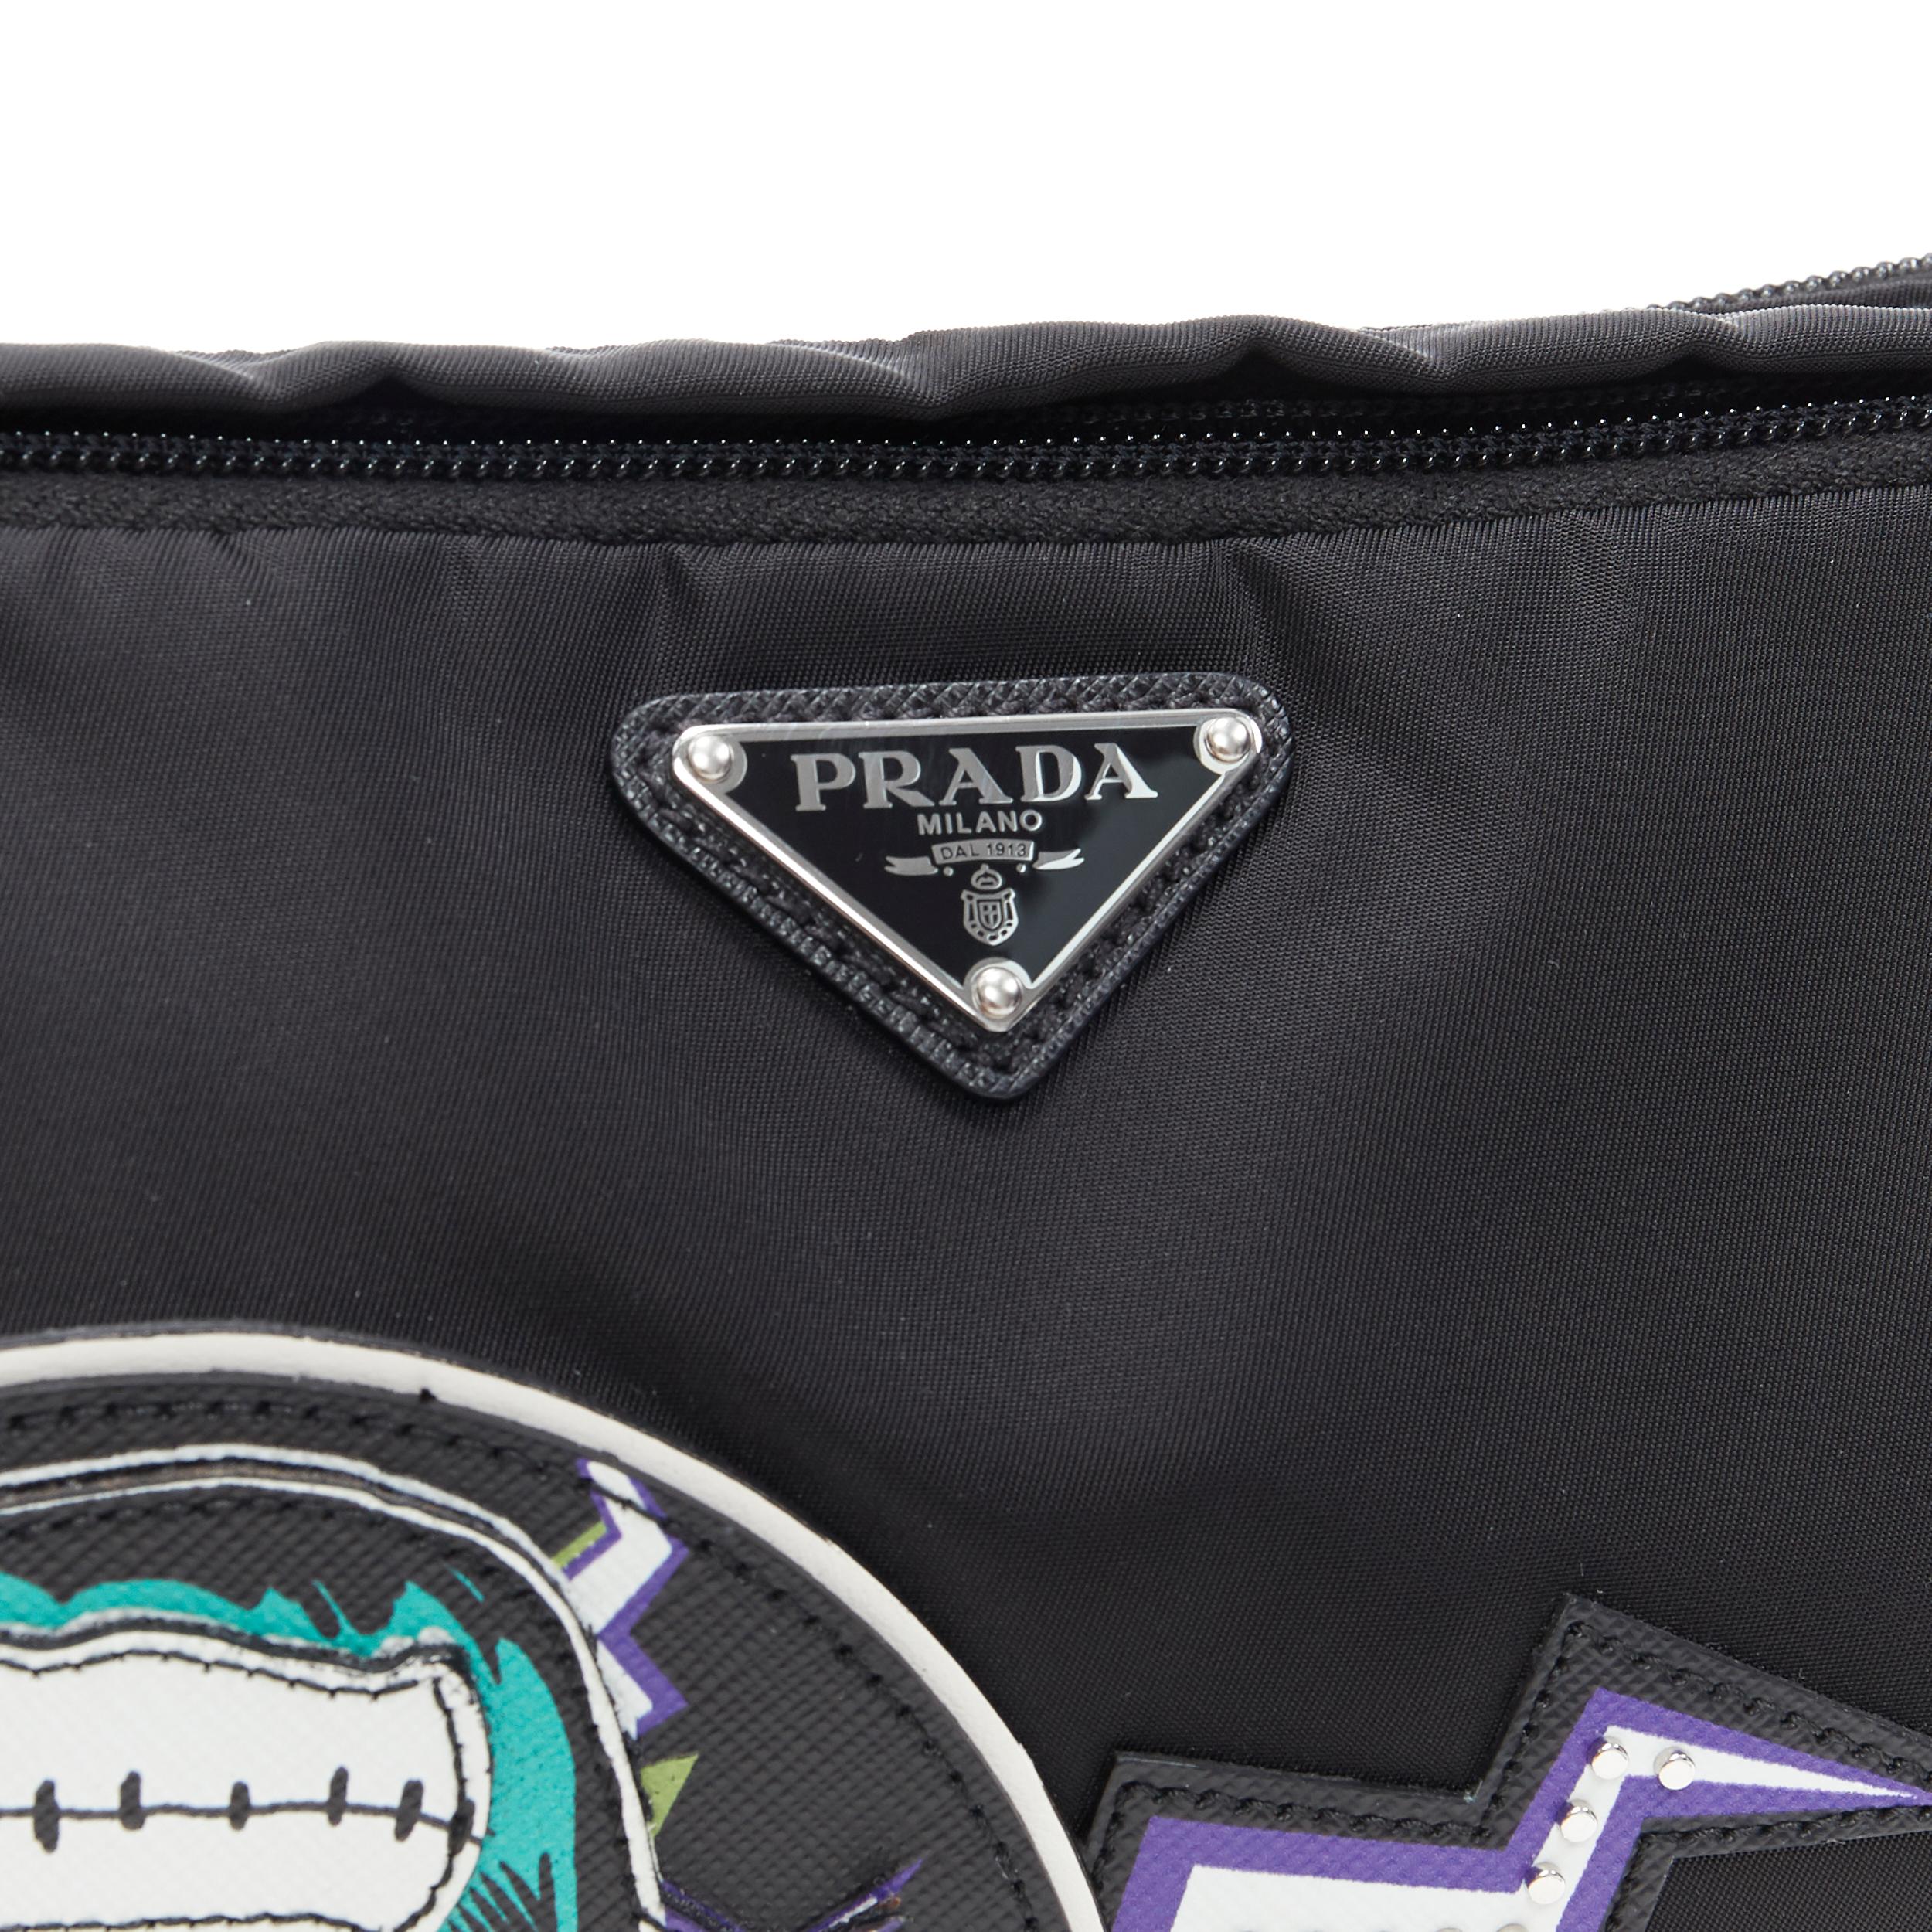 Men's new PRADA 2019 Frankenstein leather patchwork black nylon oversized belt bag